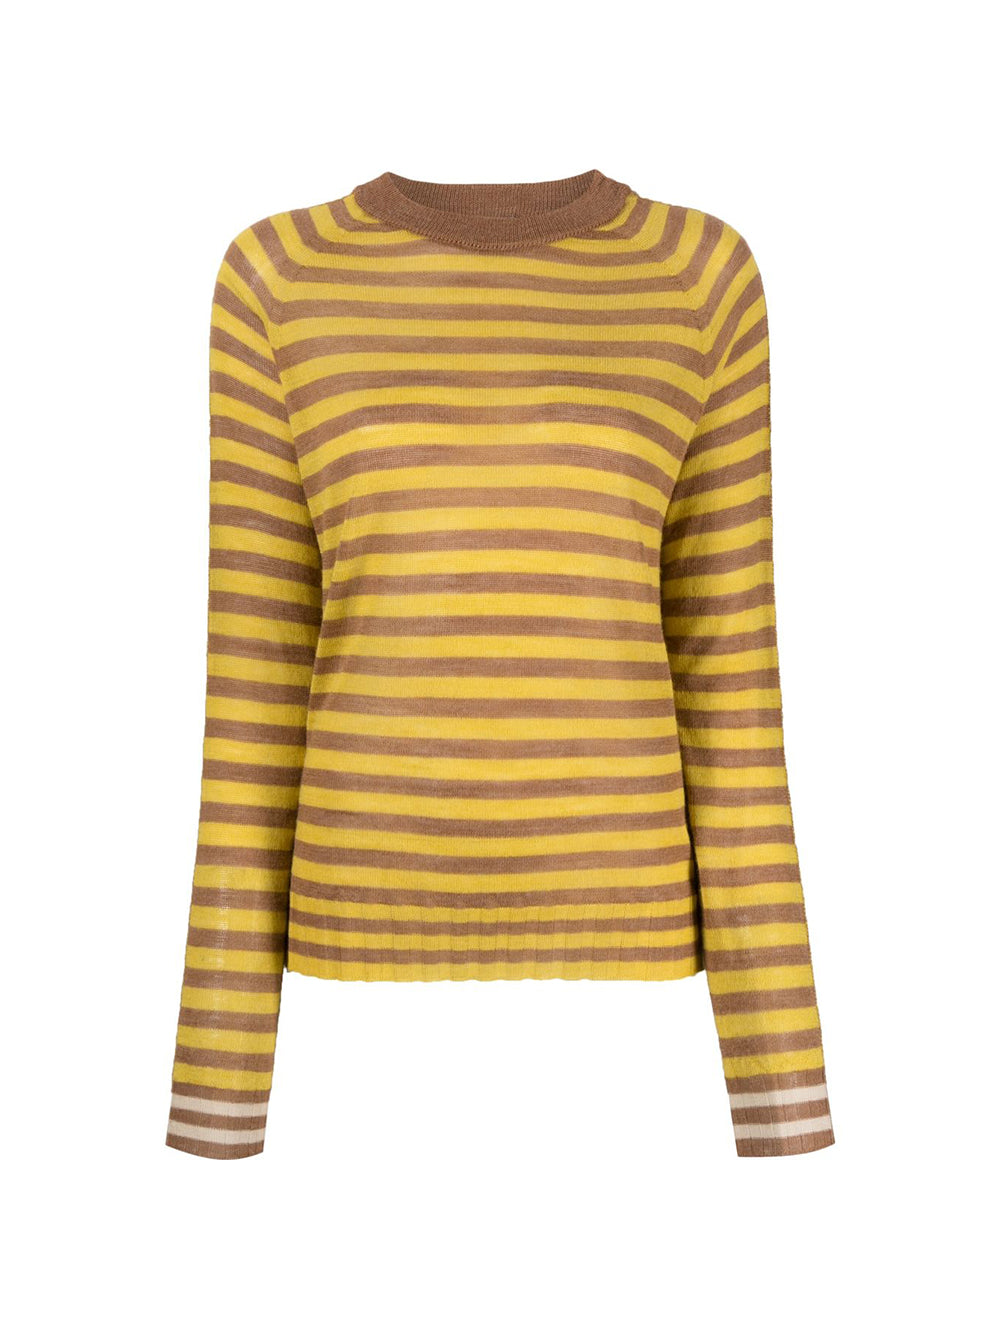 Stripes Boxy Yellow Sweater